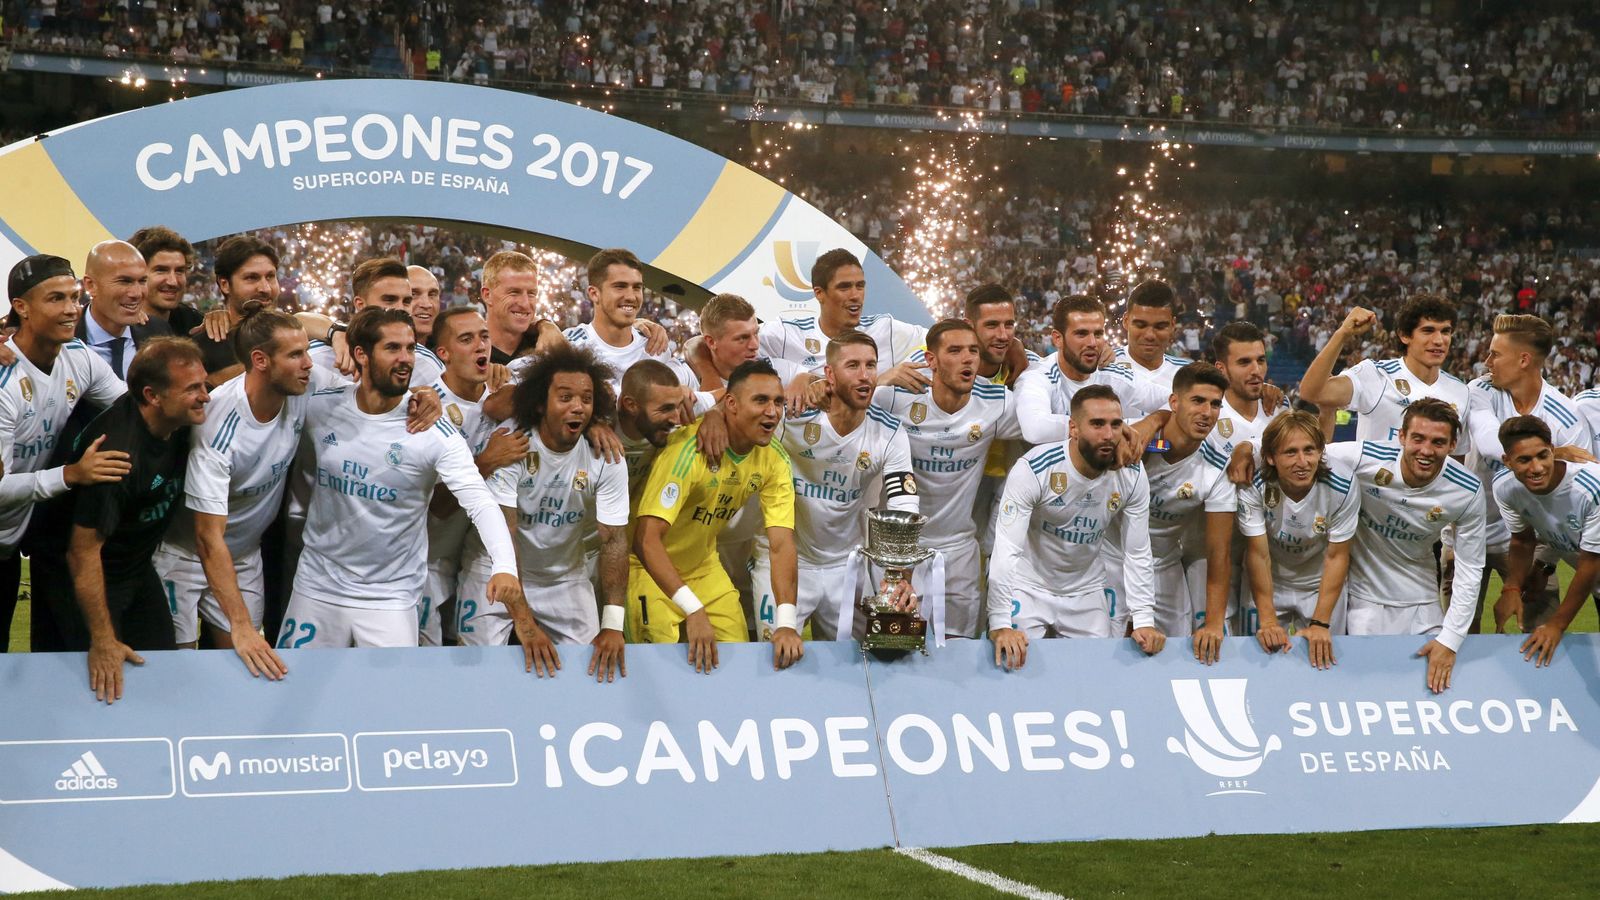 Foto: El Real Madrid ganó este miércoles el primer título de la temporada, la Supercopa de España. (EFE)